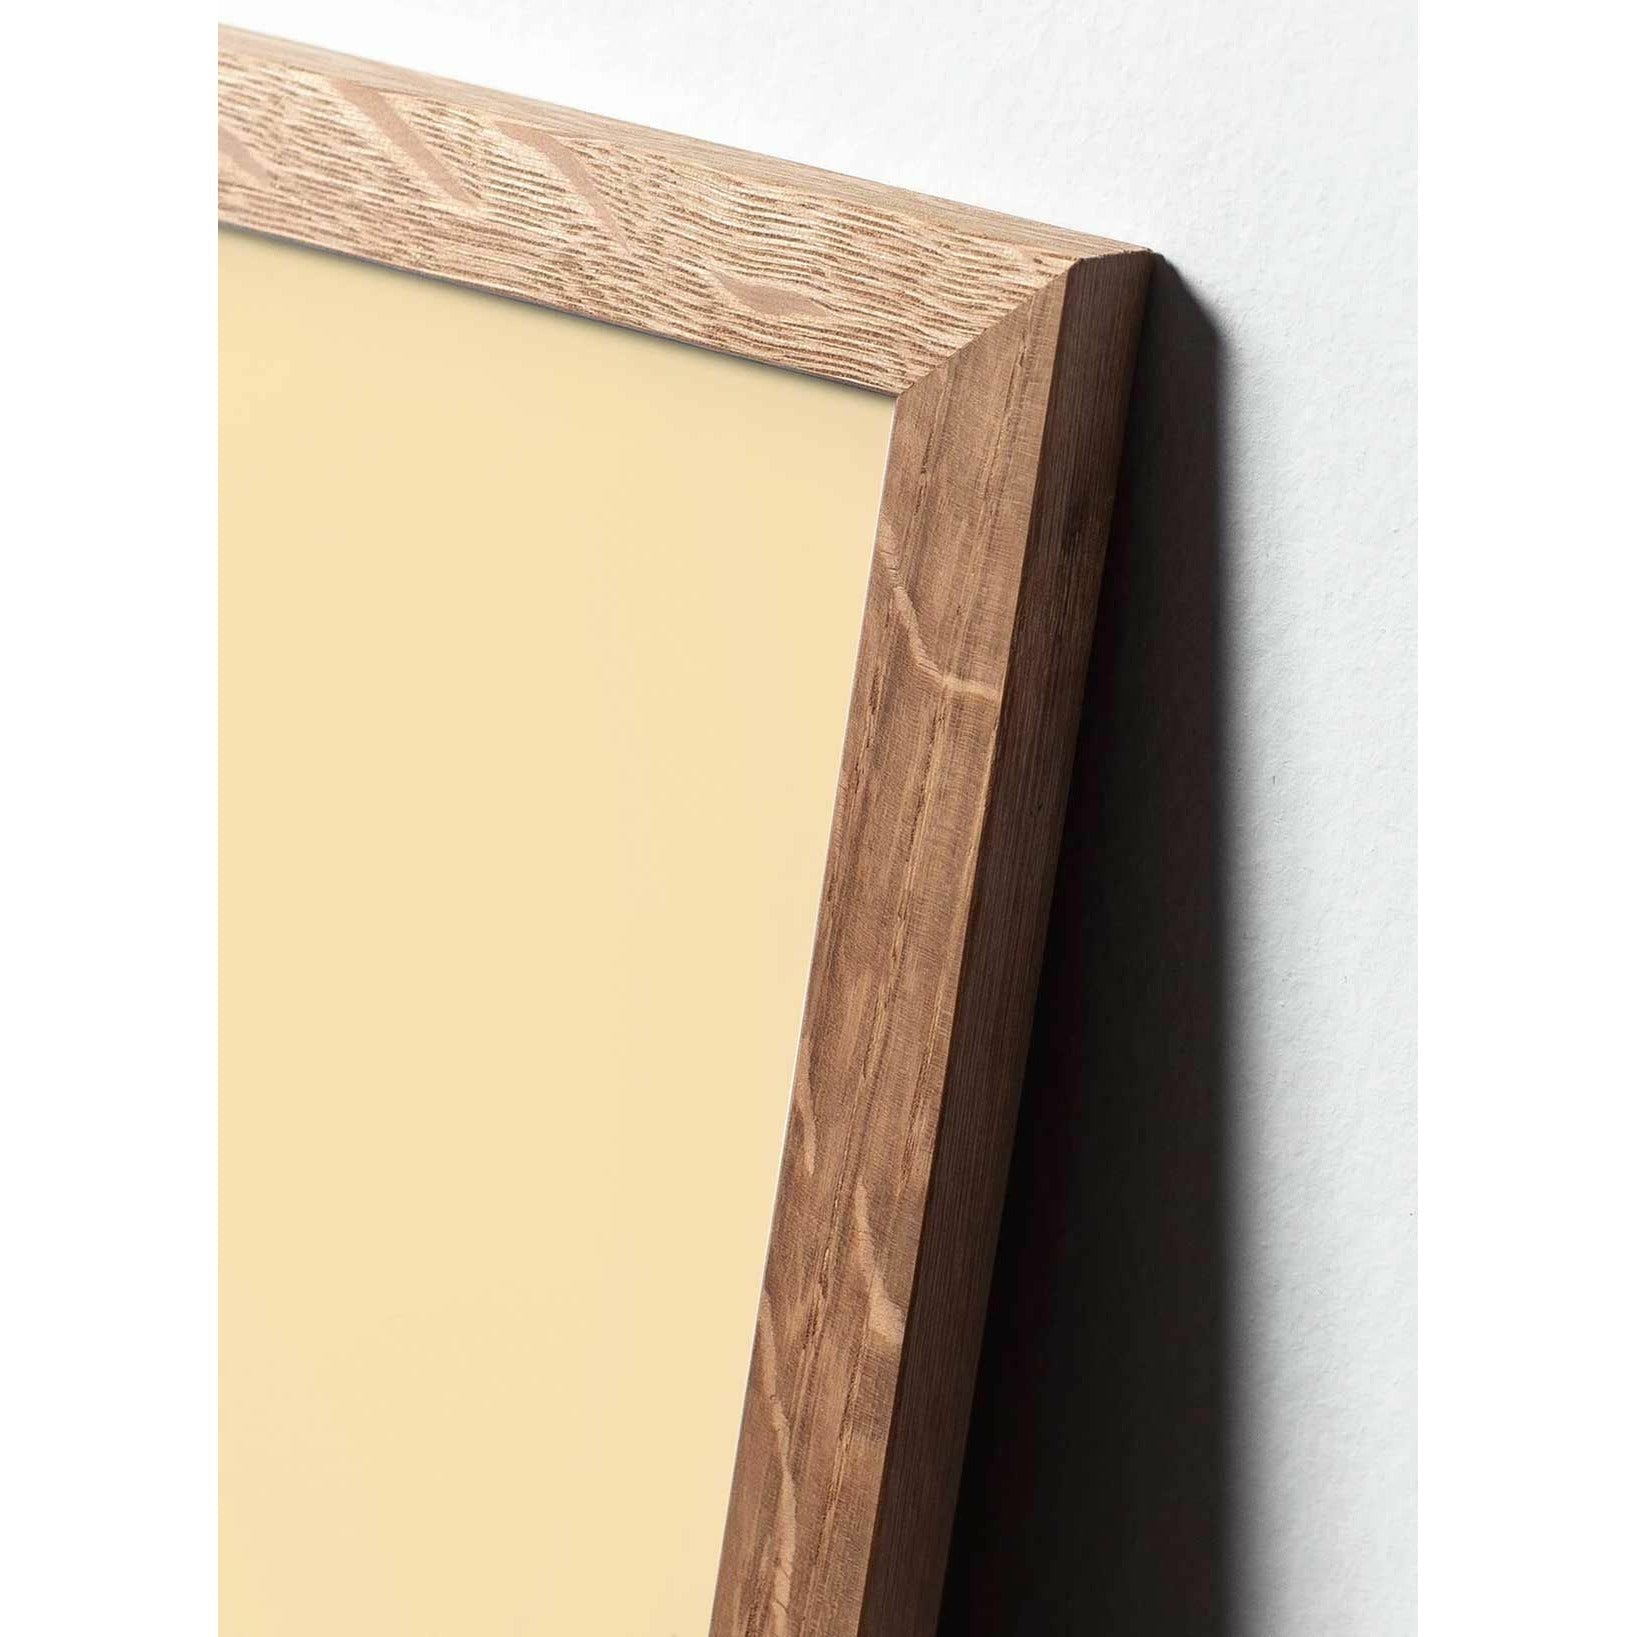 Póster clásico de cono de pino de creación, marco hecho de madera clara 30x40 cm, fondo azul oscuro